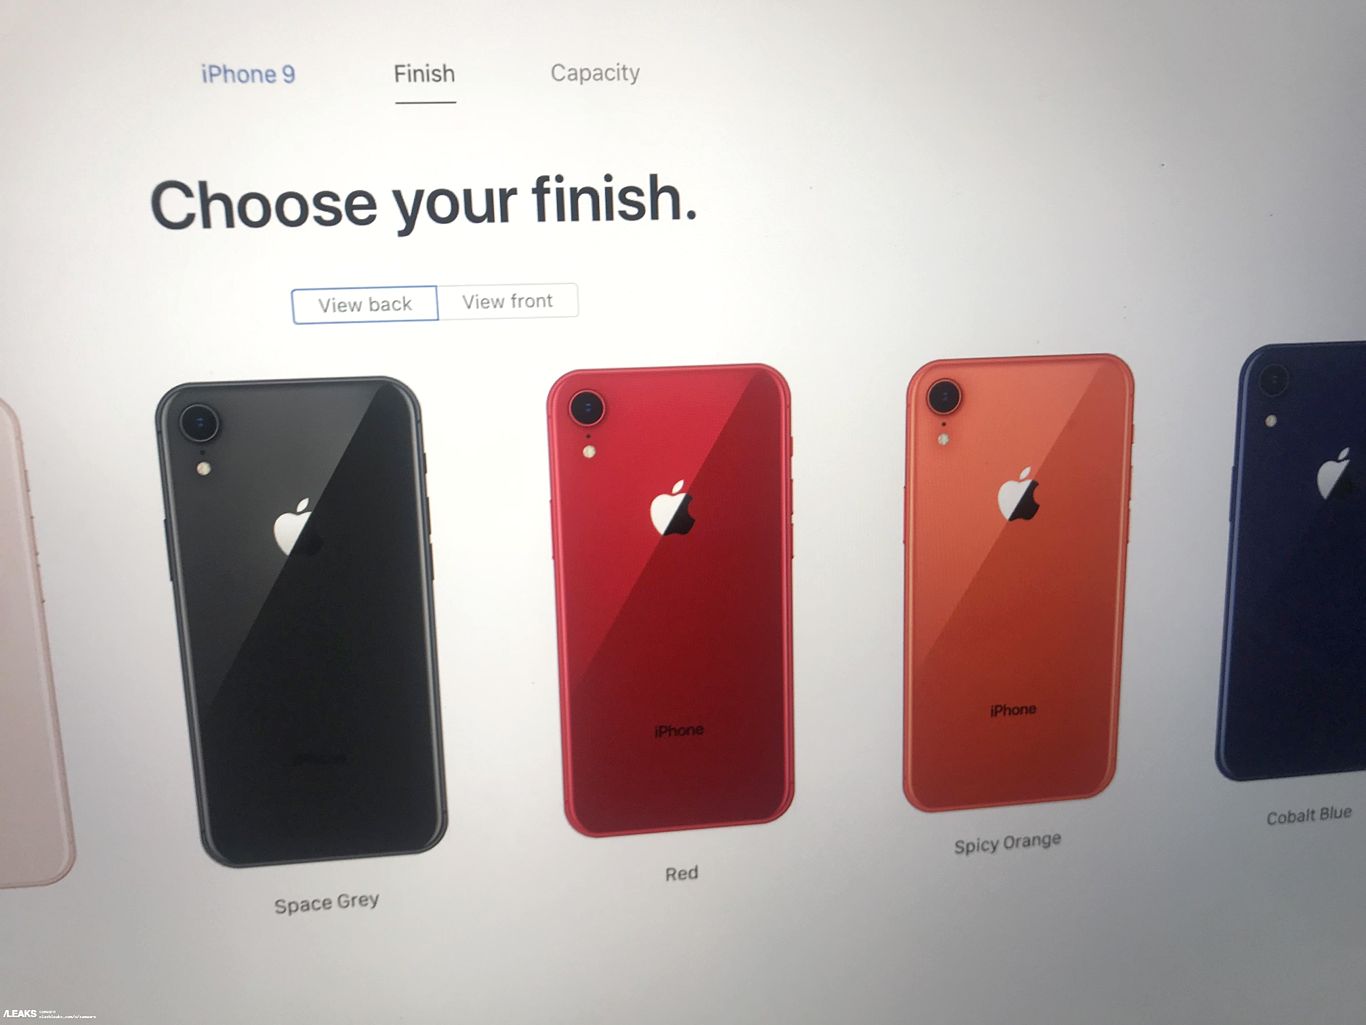 صفحه آیفون ۹ (iPhone 9) در وب سایت اپل دیده شد، رنگ نارنجی و نام تایید می شود